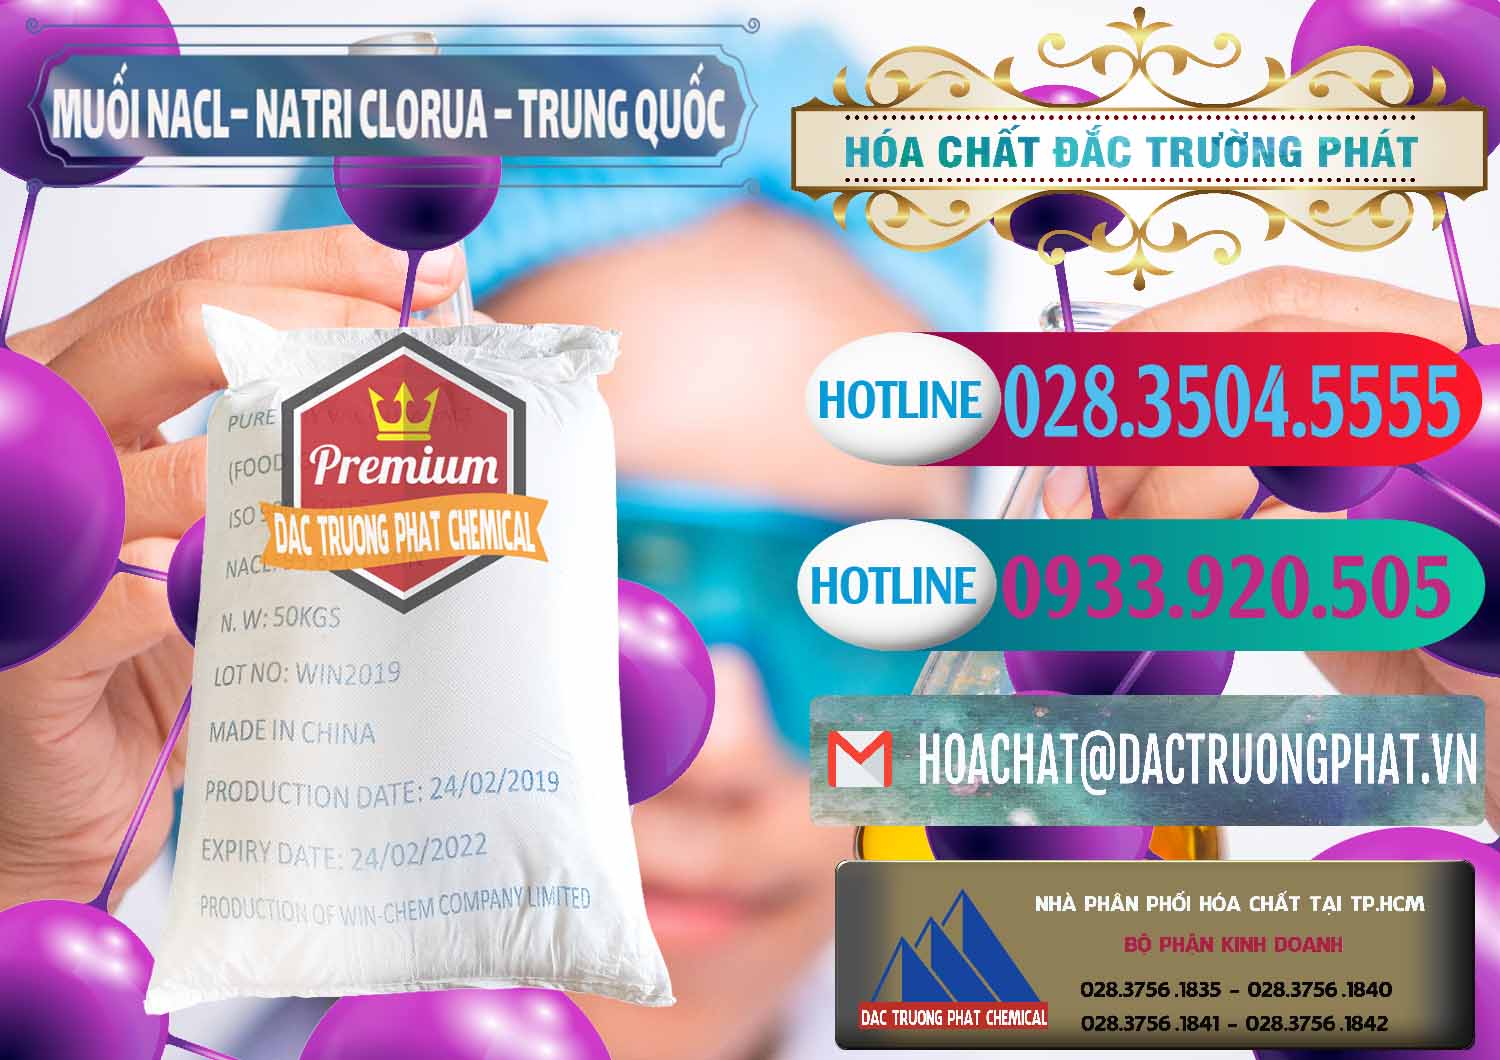 Công ty bán - cung cấp Muối NaCL – Sodium Chloride Trung Quốc China - 0097 - Công ty phân phối và cung ứng hóa chất tại TP.HCM - truongphat.vn